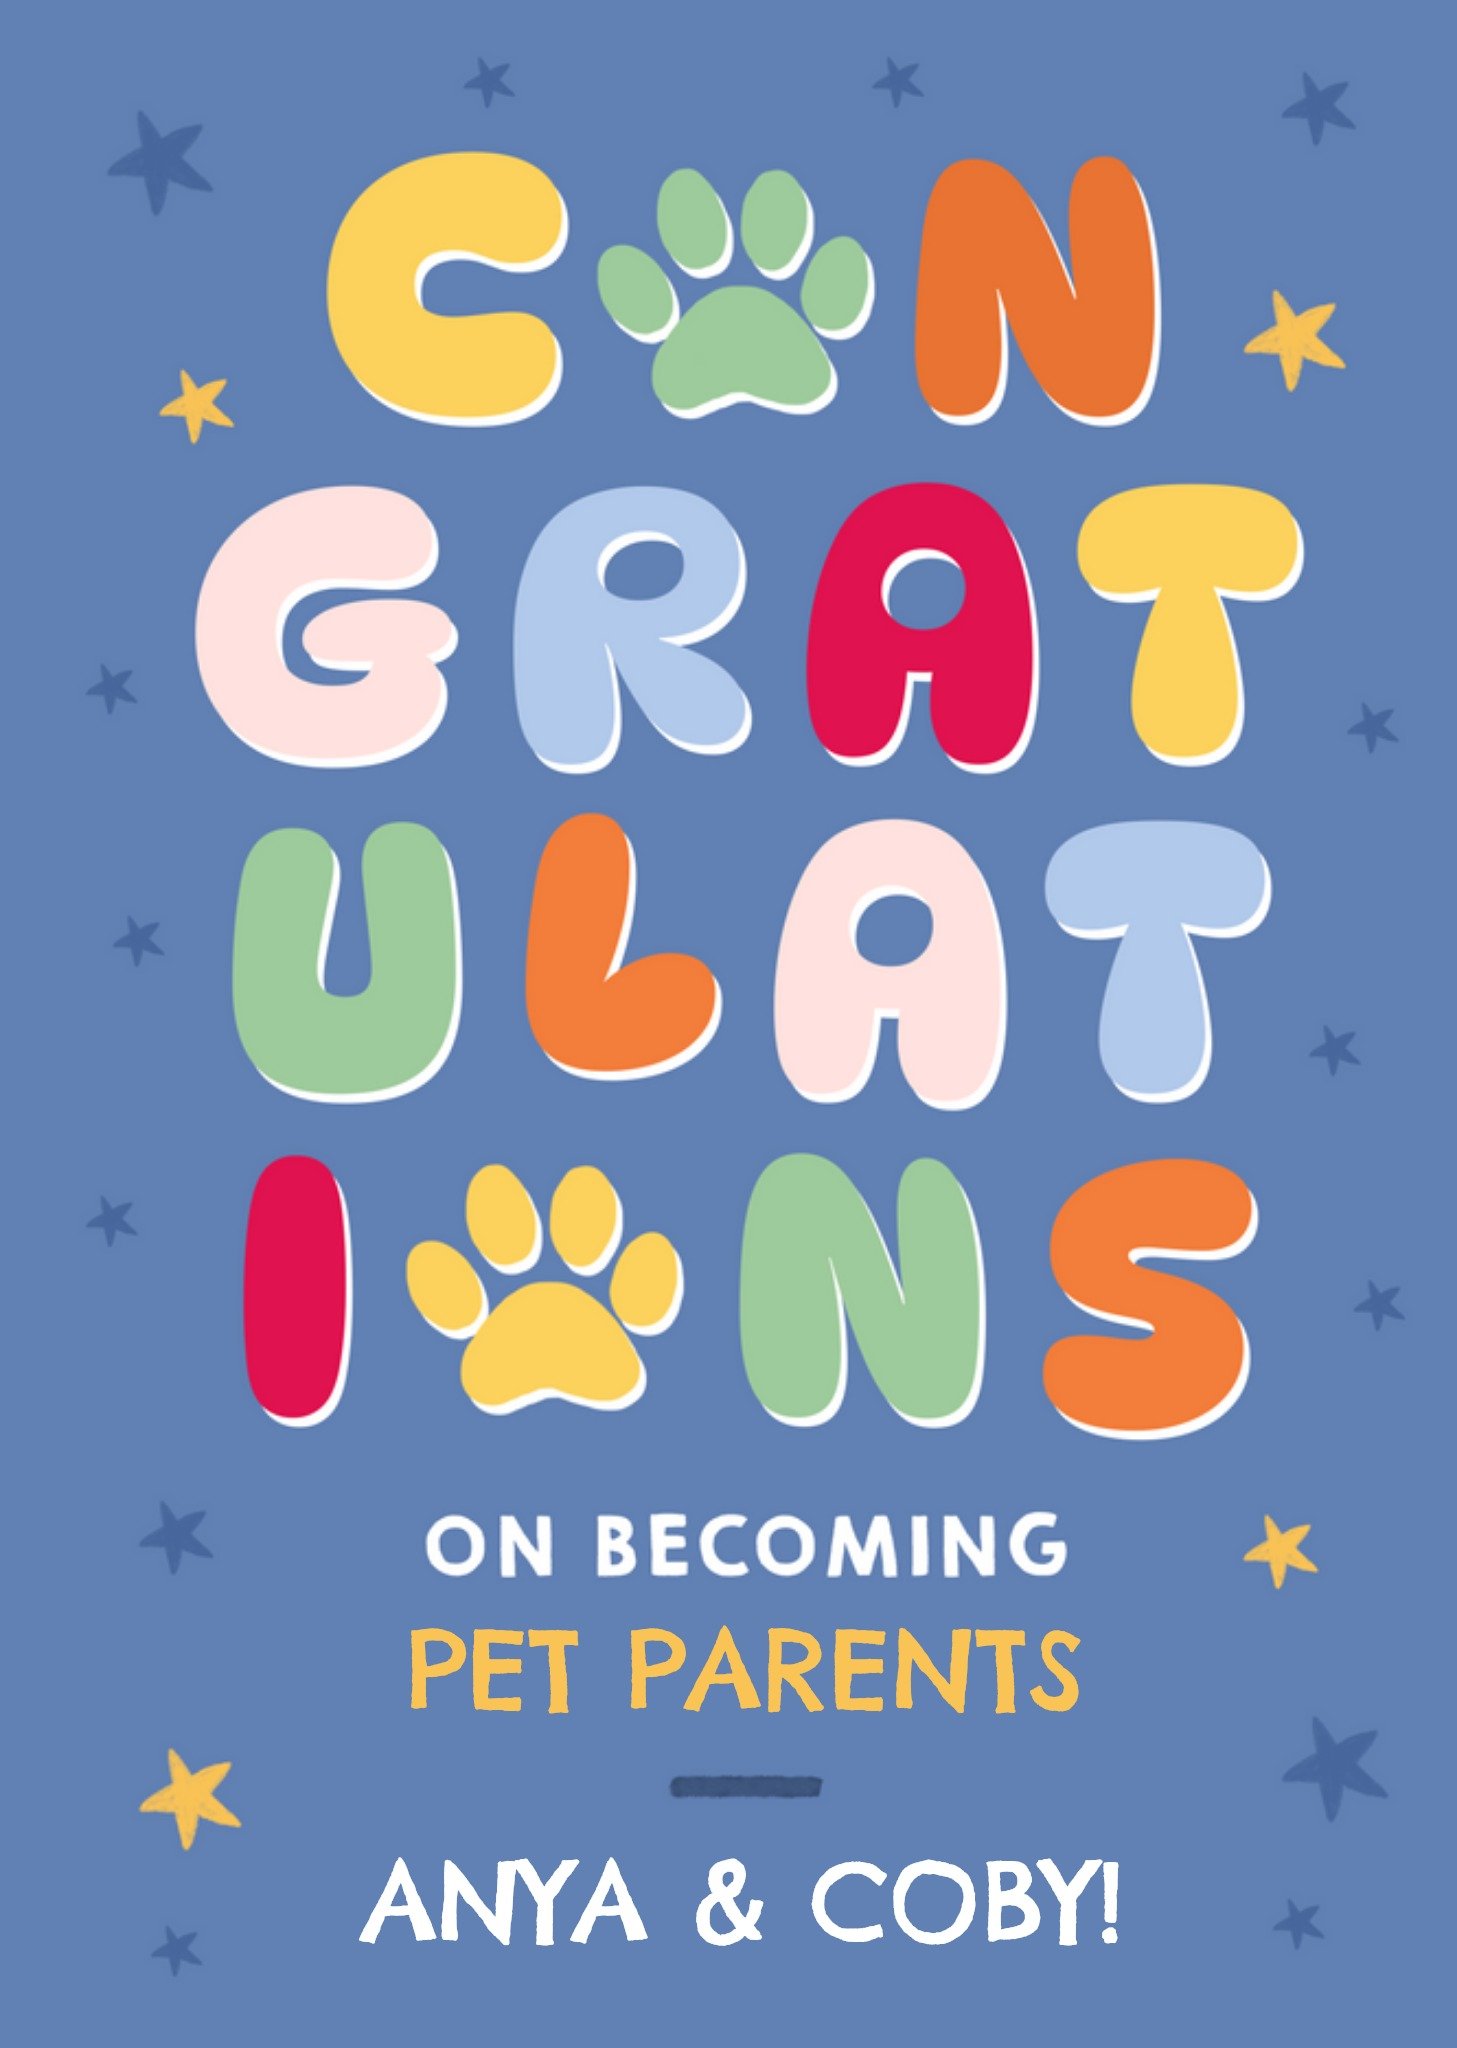 Moonpig Pet Parents Colourful Congratulations Card Ecard